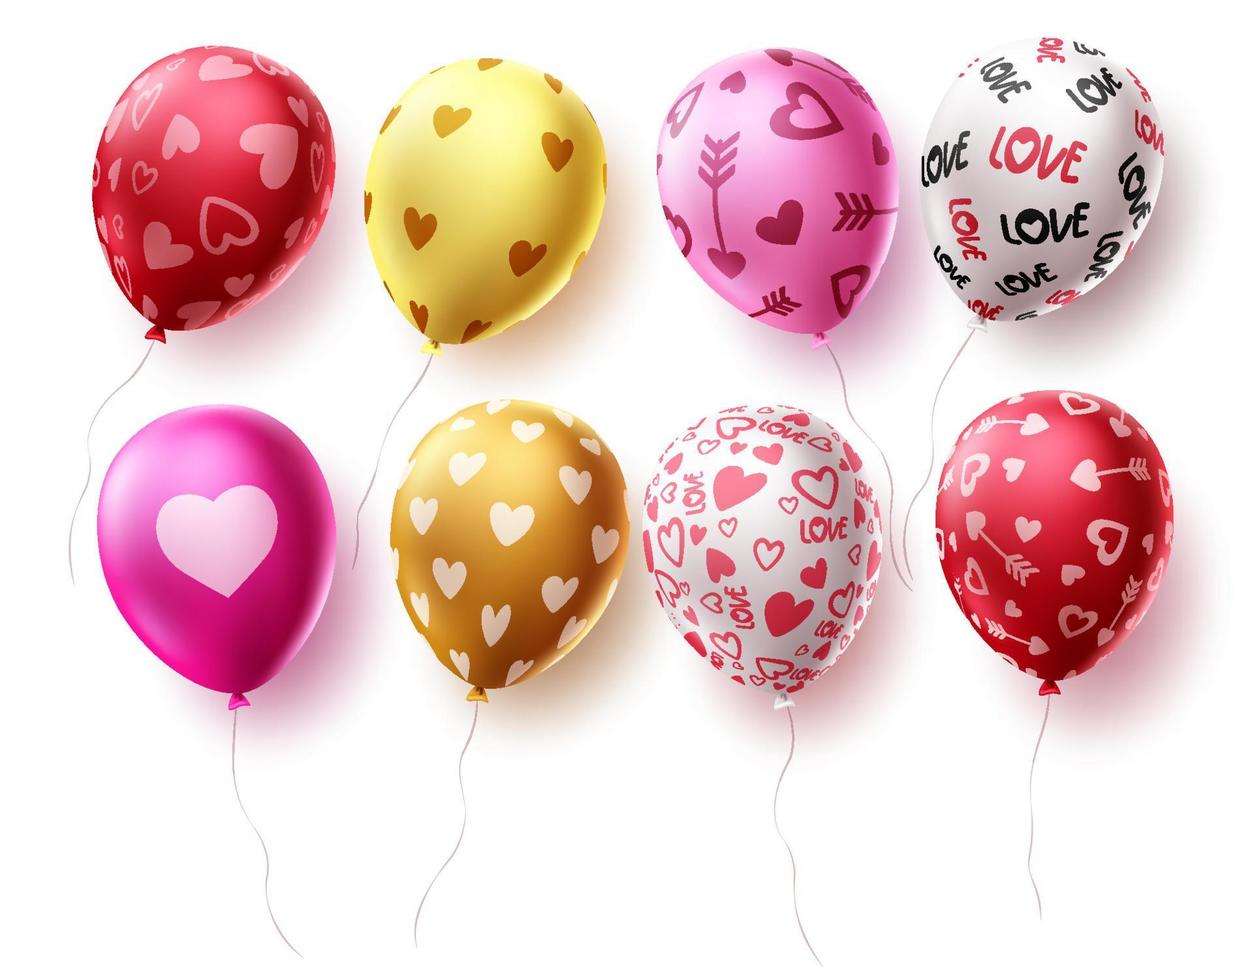 födelsedag ballonger som vektor design. ballongelement för födelsedagsfirande och festdekorationer isolerade i vit bakgrund. vektor illustration.